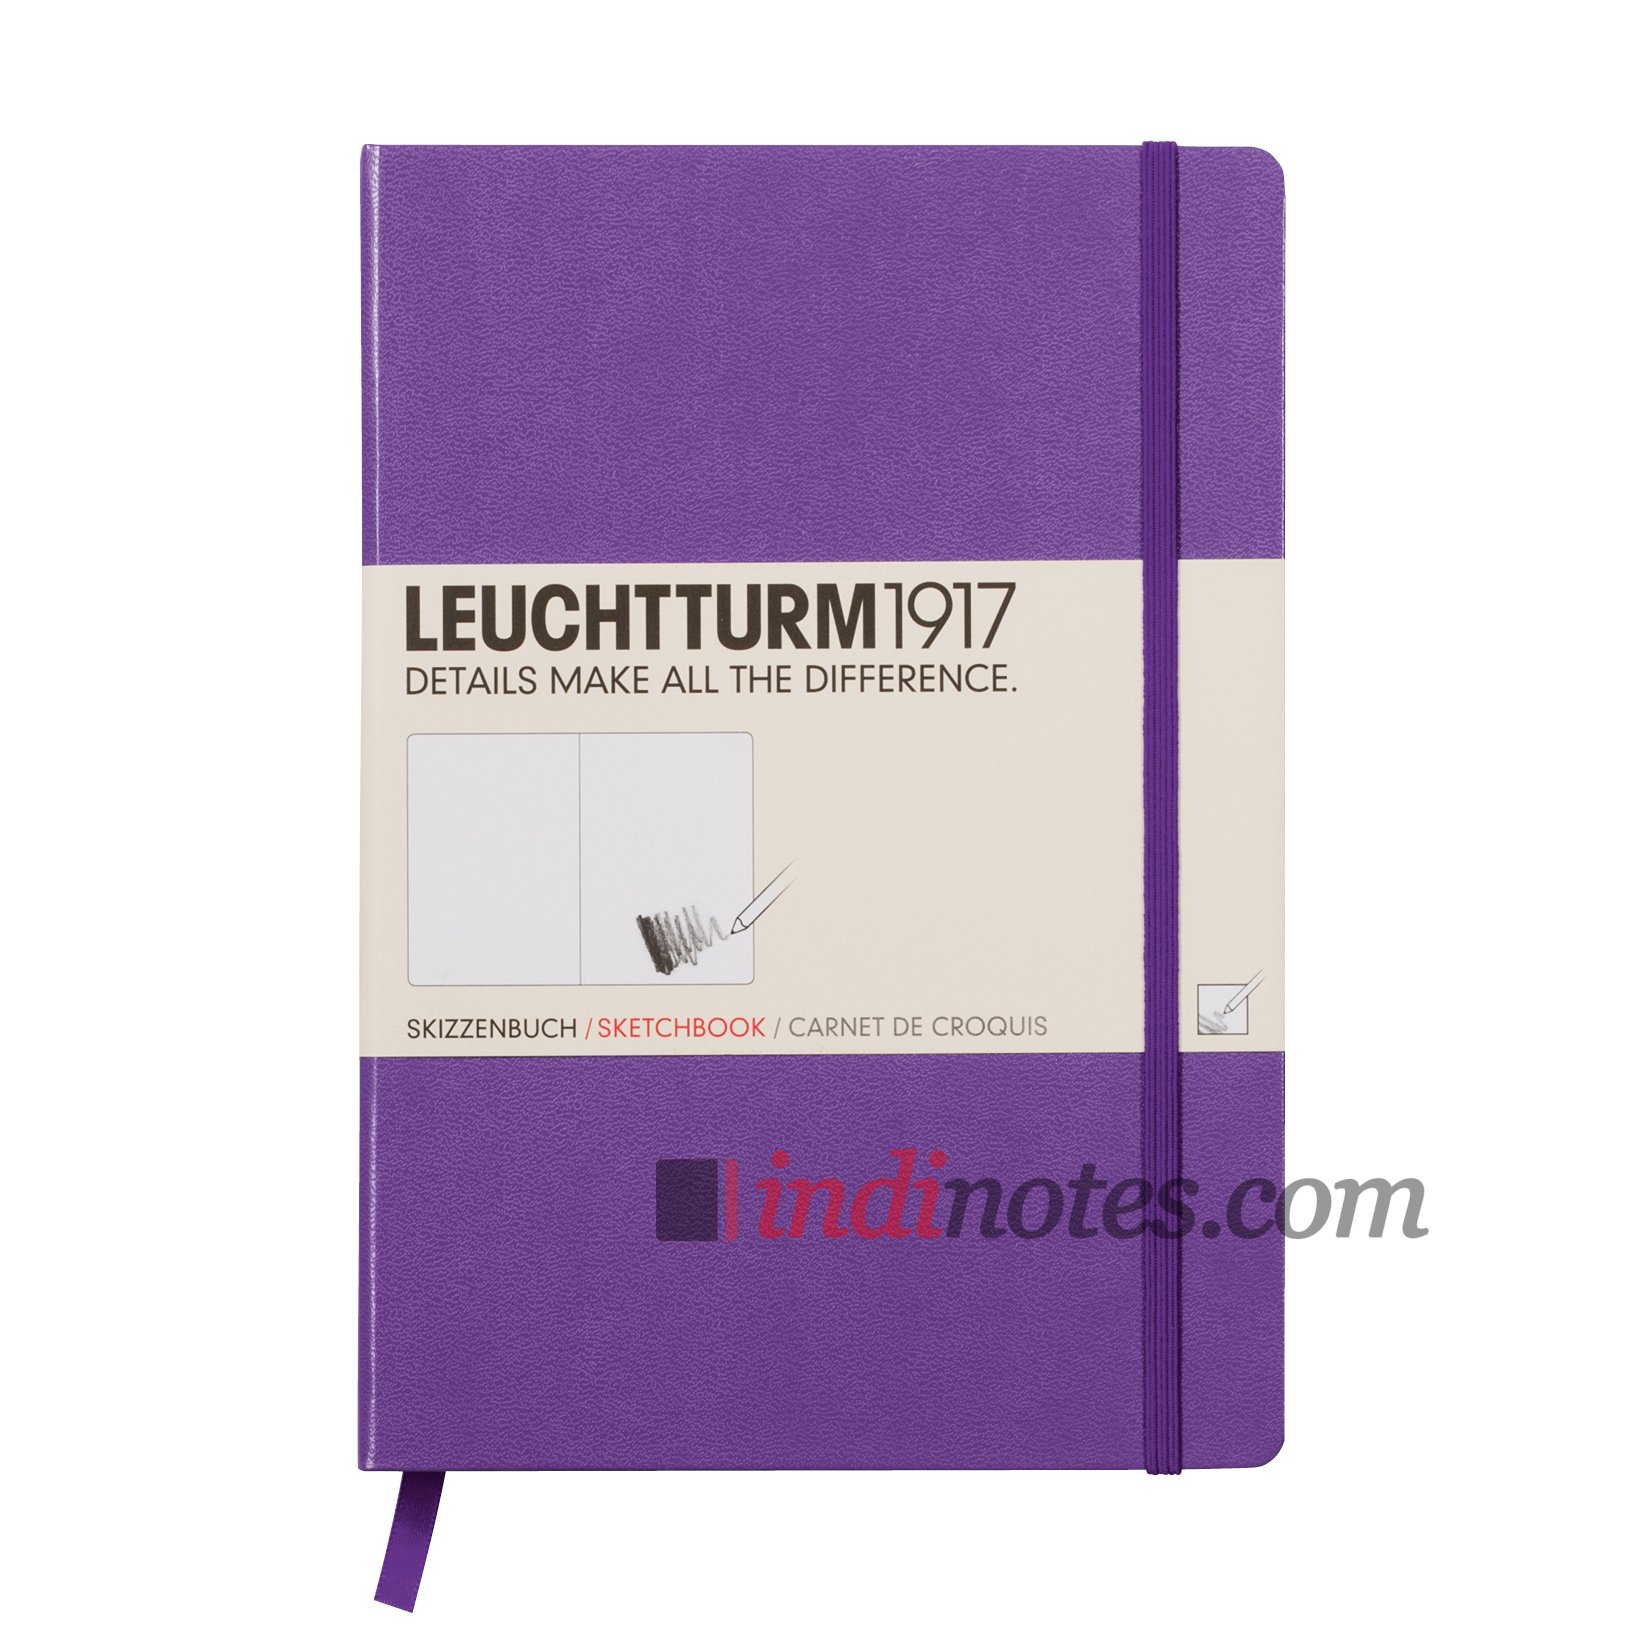 Купить Скетчбук, альбом для рисования Leuchtturm1917 Sketchbook